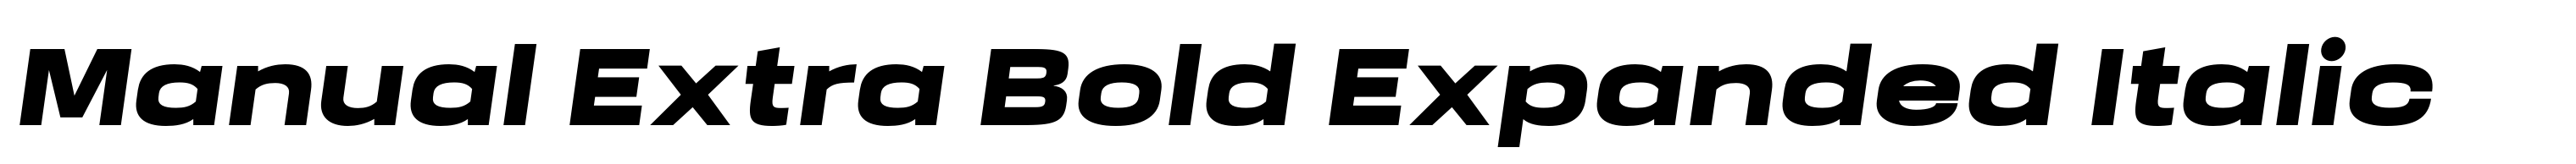 Manual Extra Bold Expanded Italic